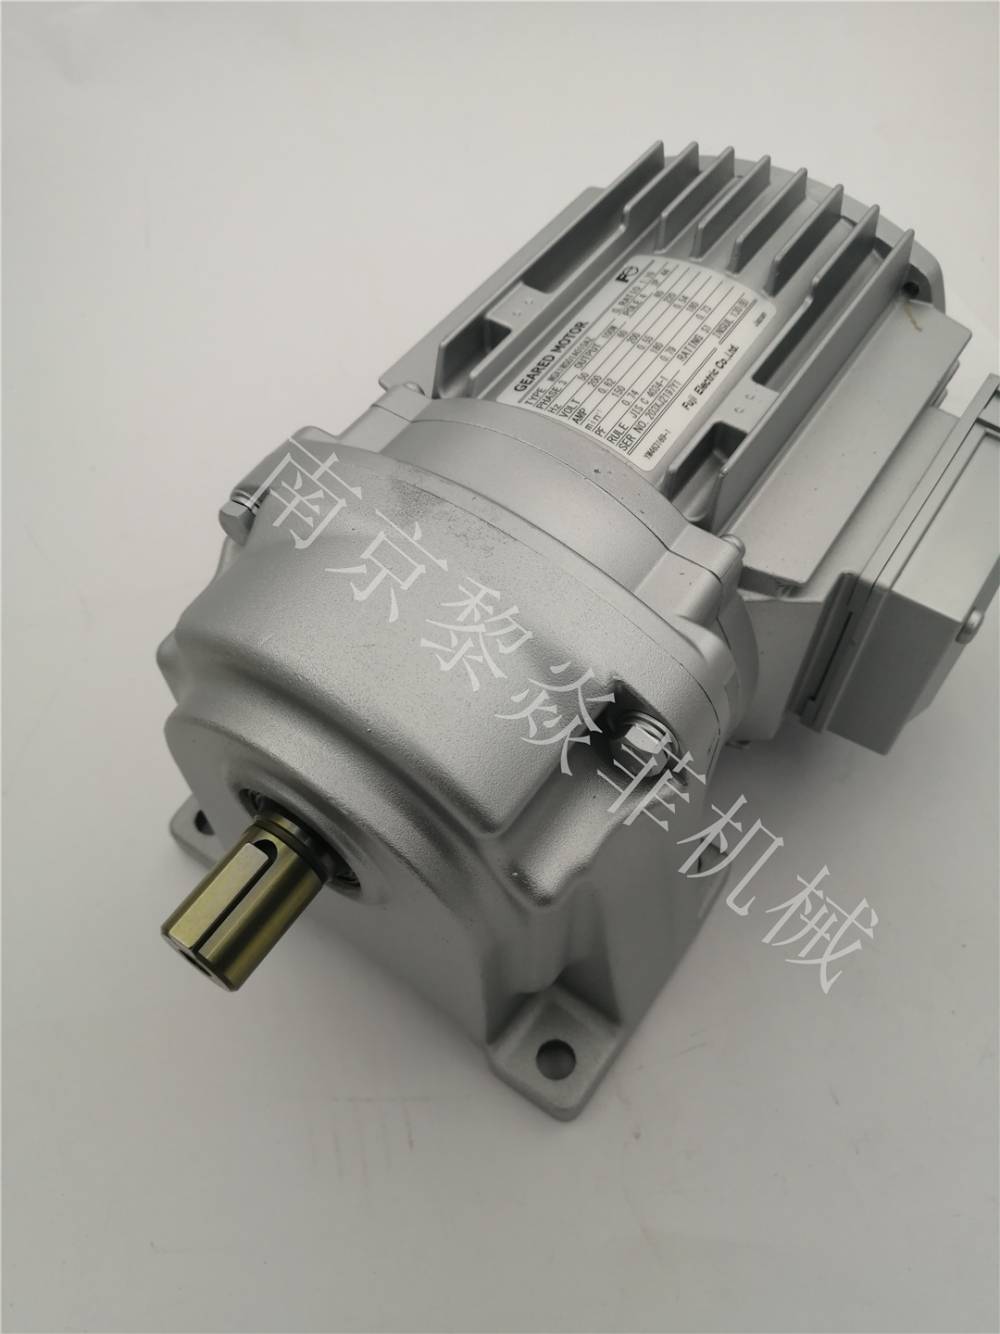 日本富士FUJI电机 MGX1MB01W060AS-SS 齿轮马达 产品介绍